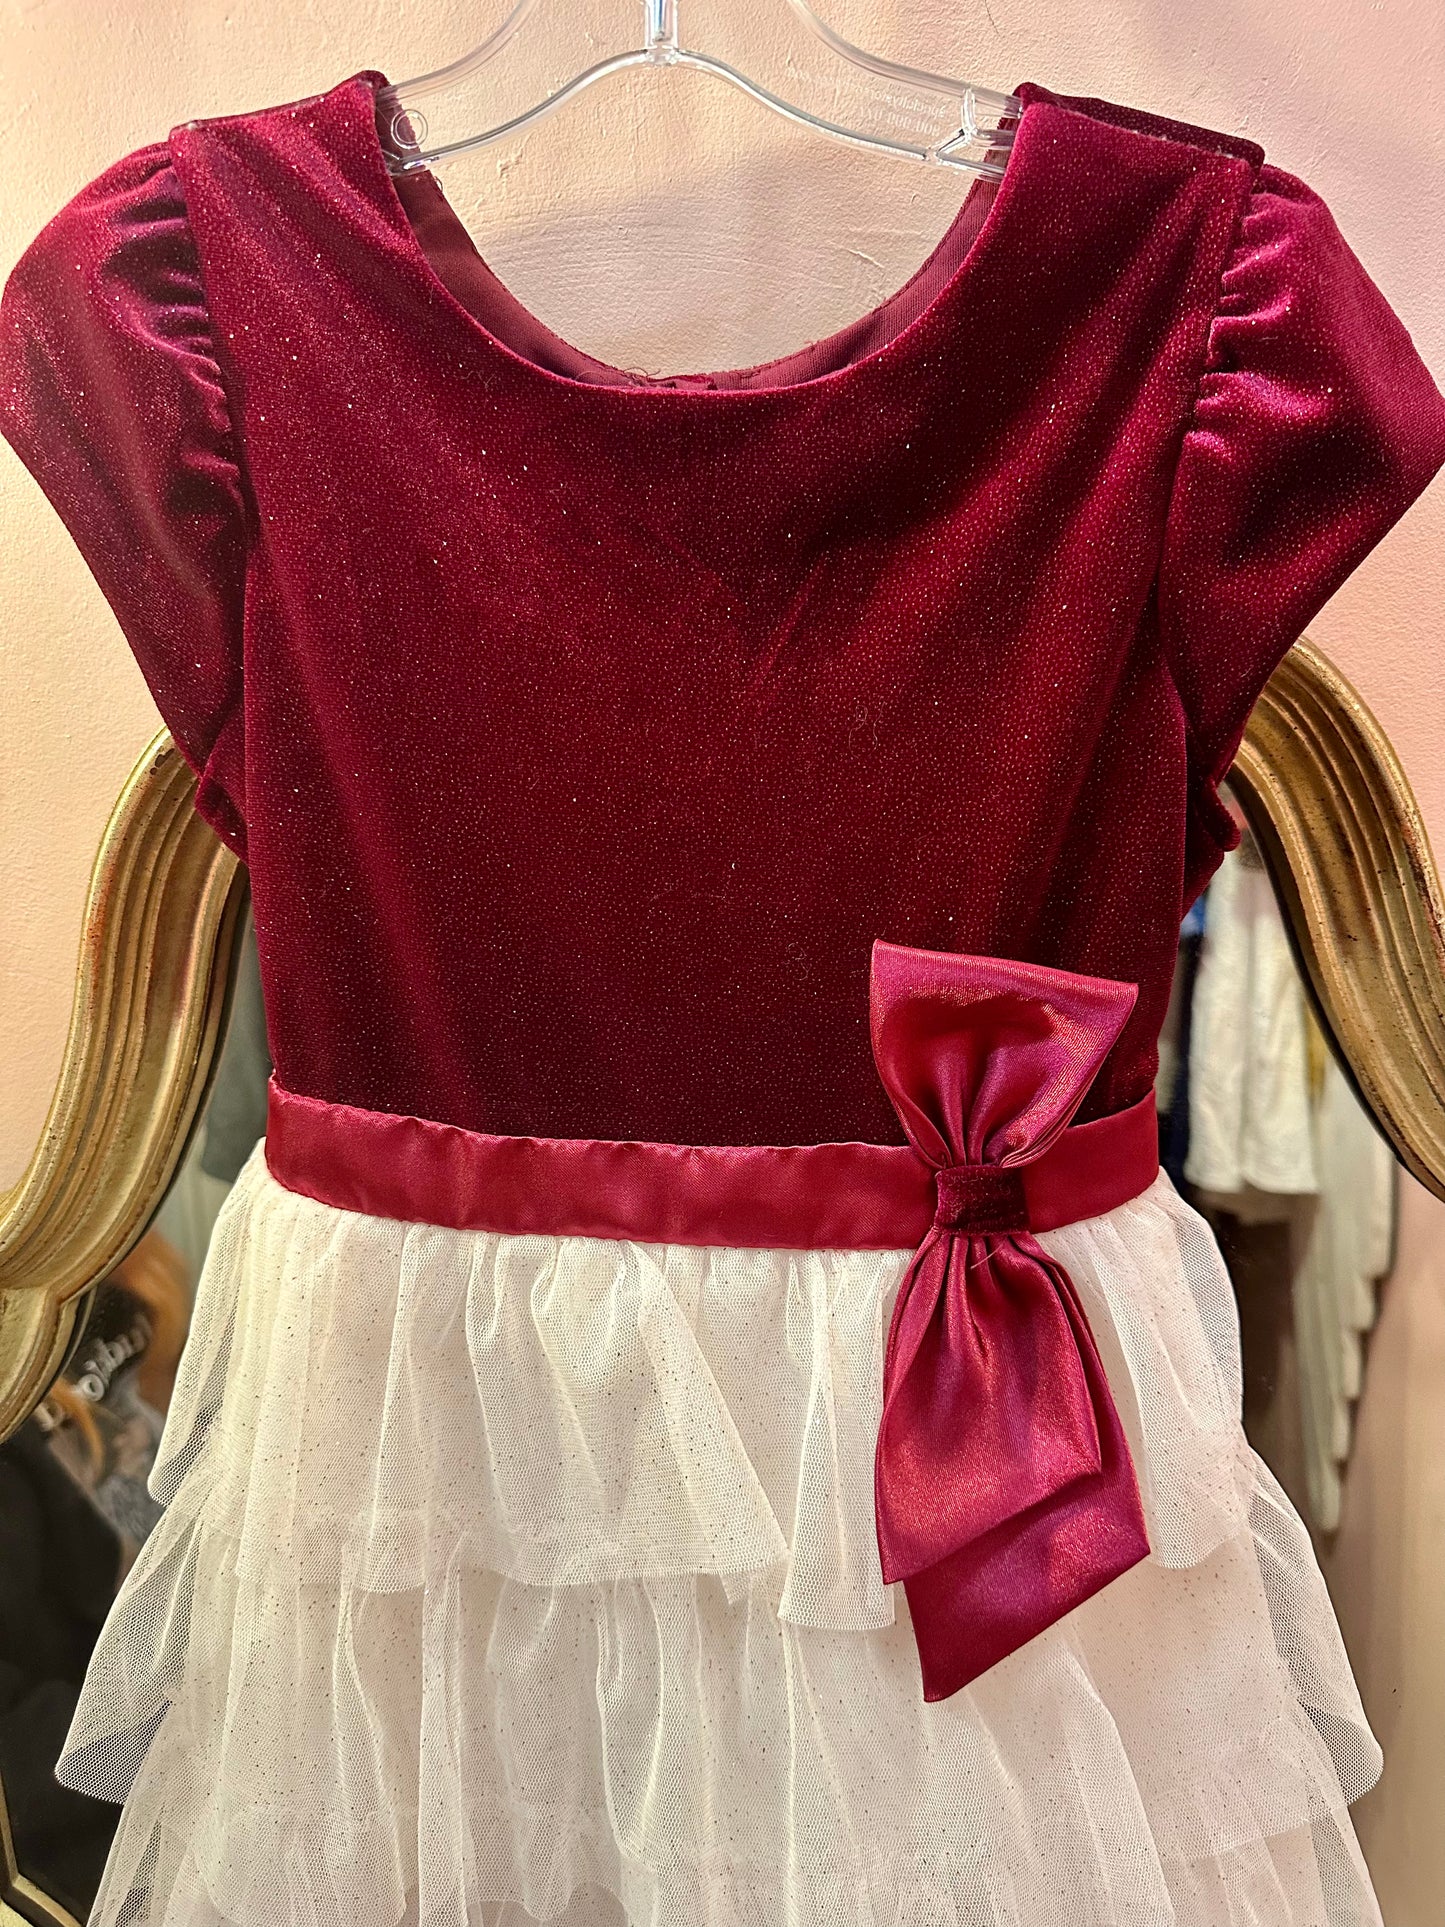 Jona Michelle Girls Dress Short Sleeve White & Red Velvet Holiday Dress Size 8